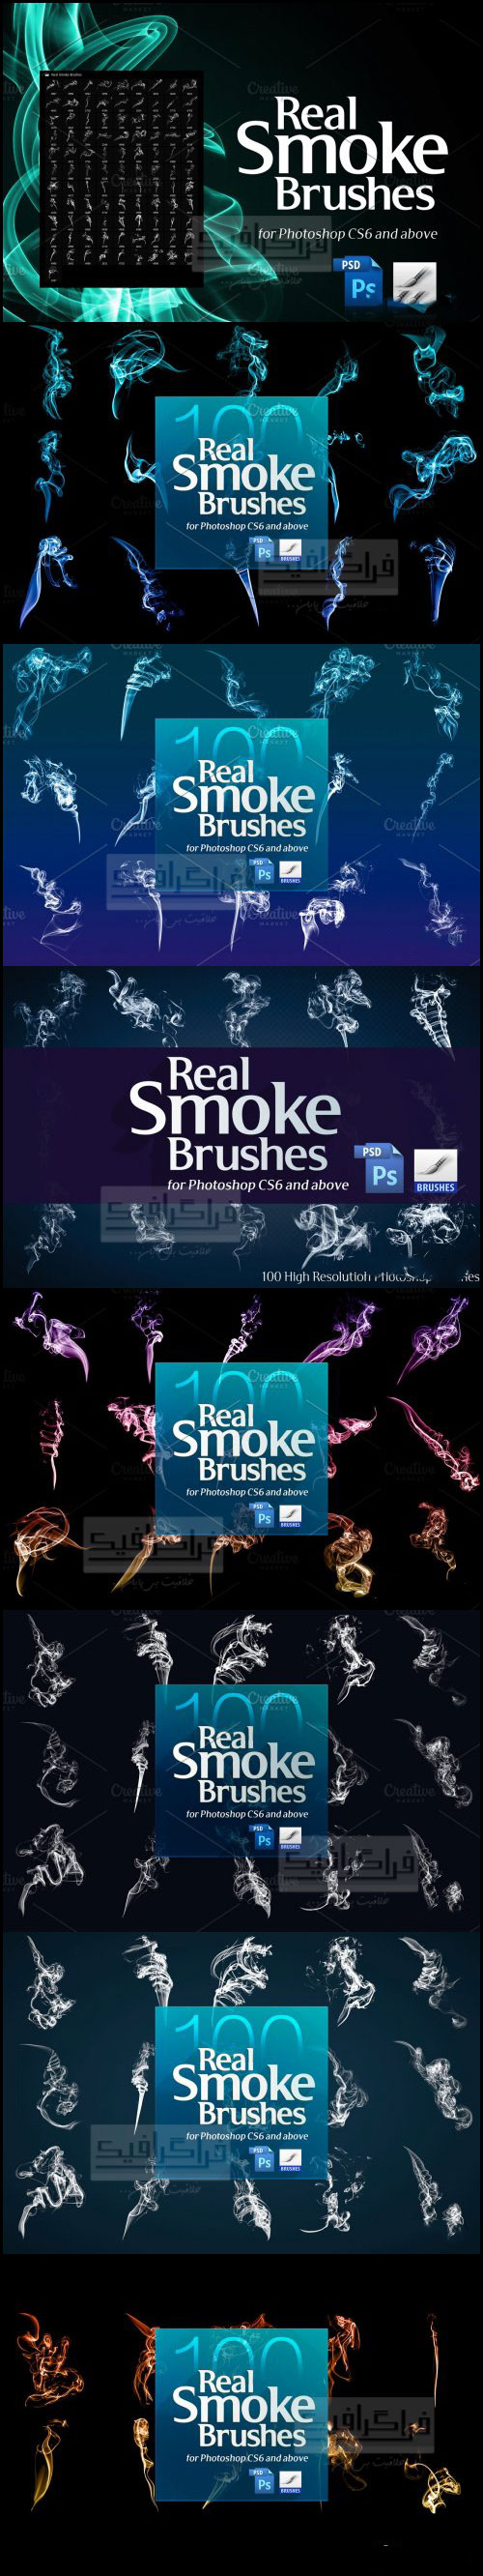 دانلود براش های دود فتوشاپ Smoke Brushes - شماره 9